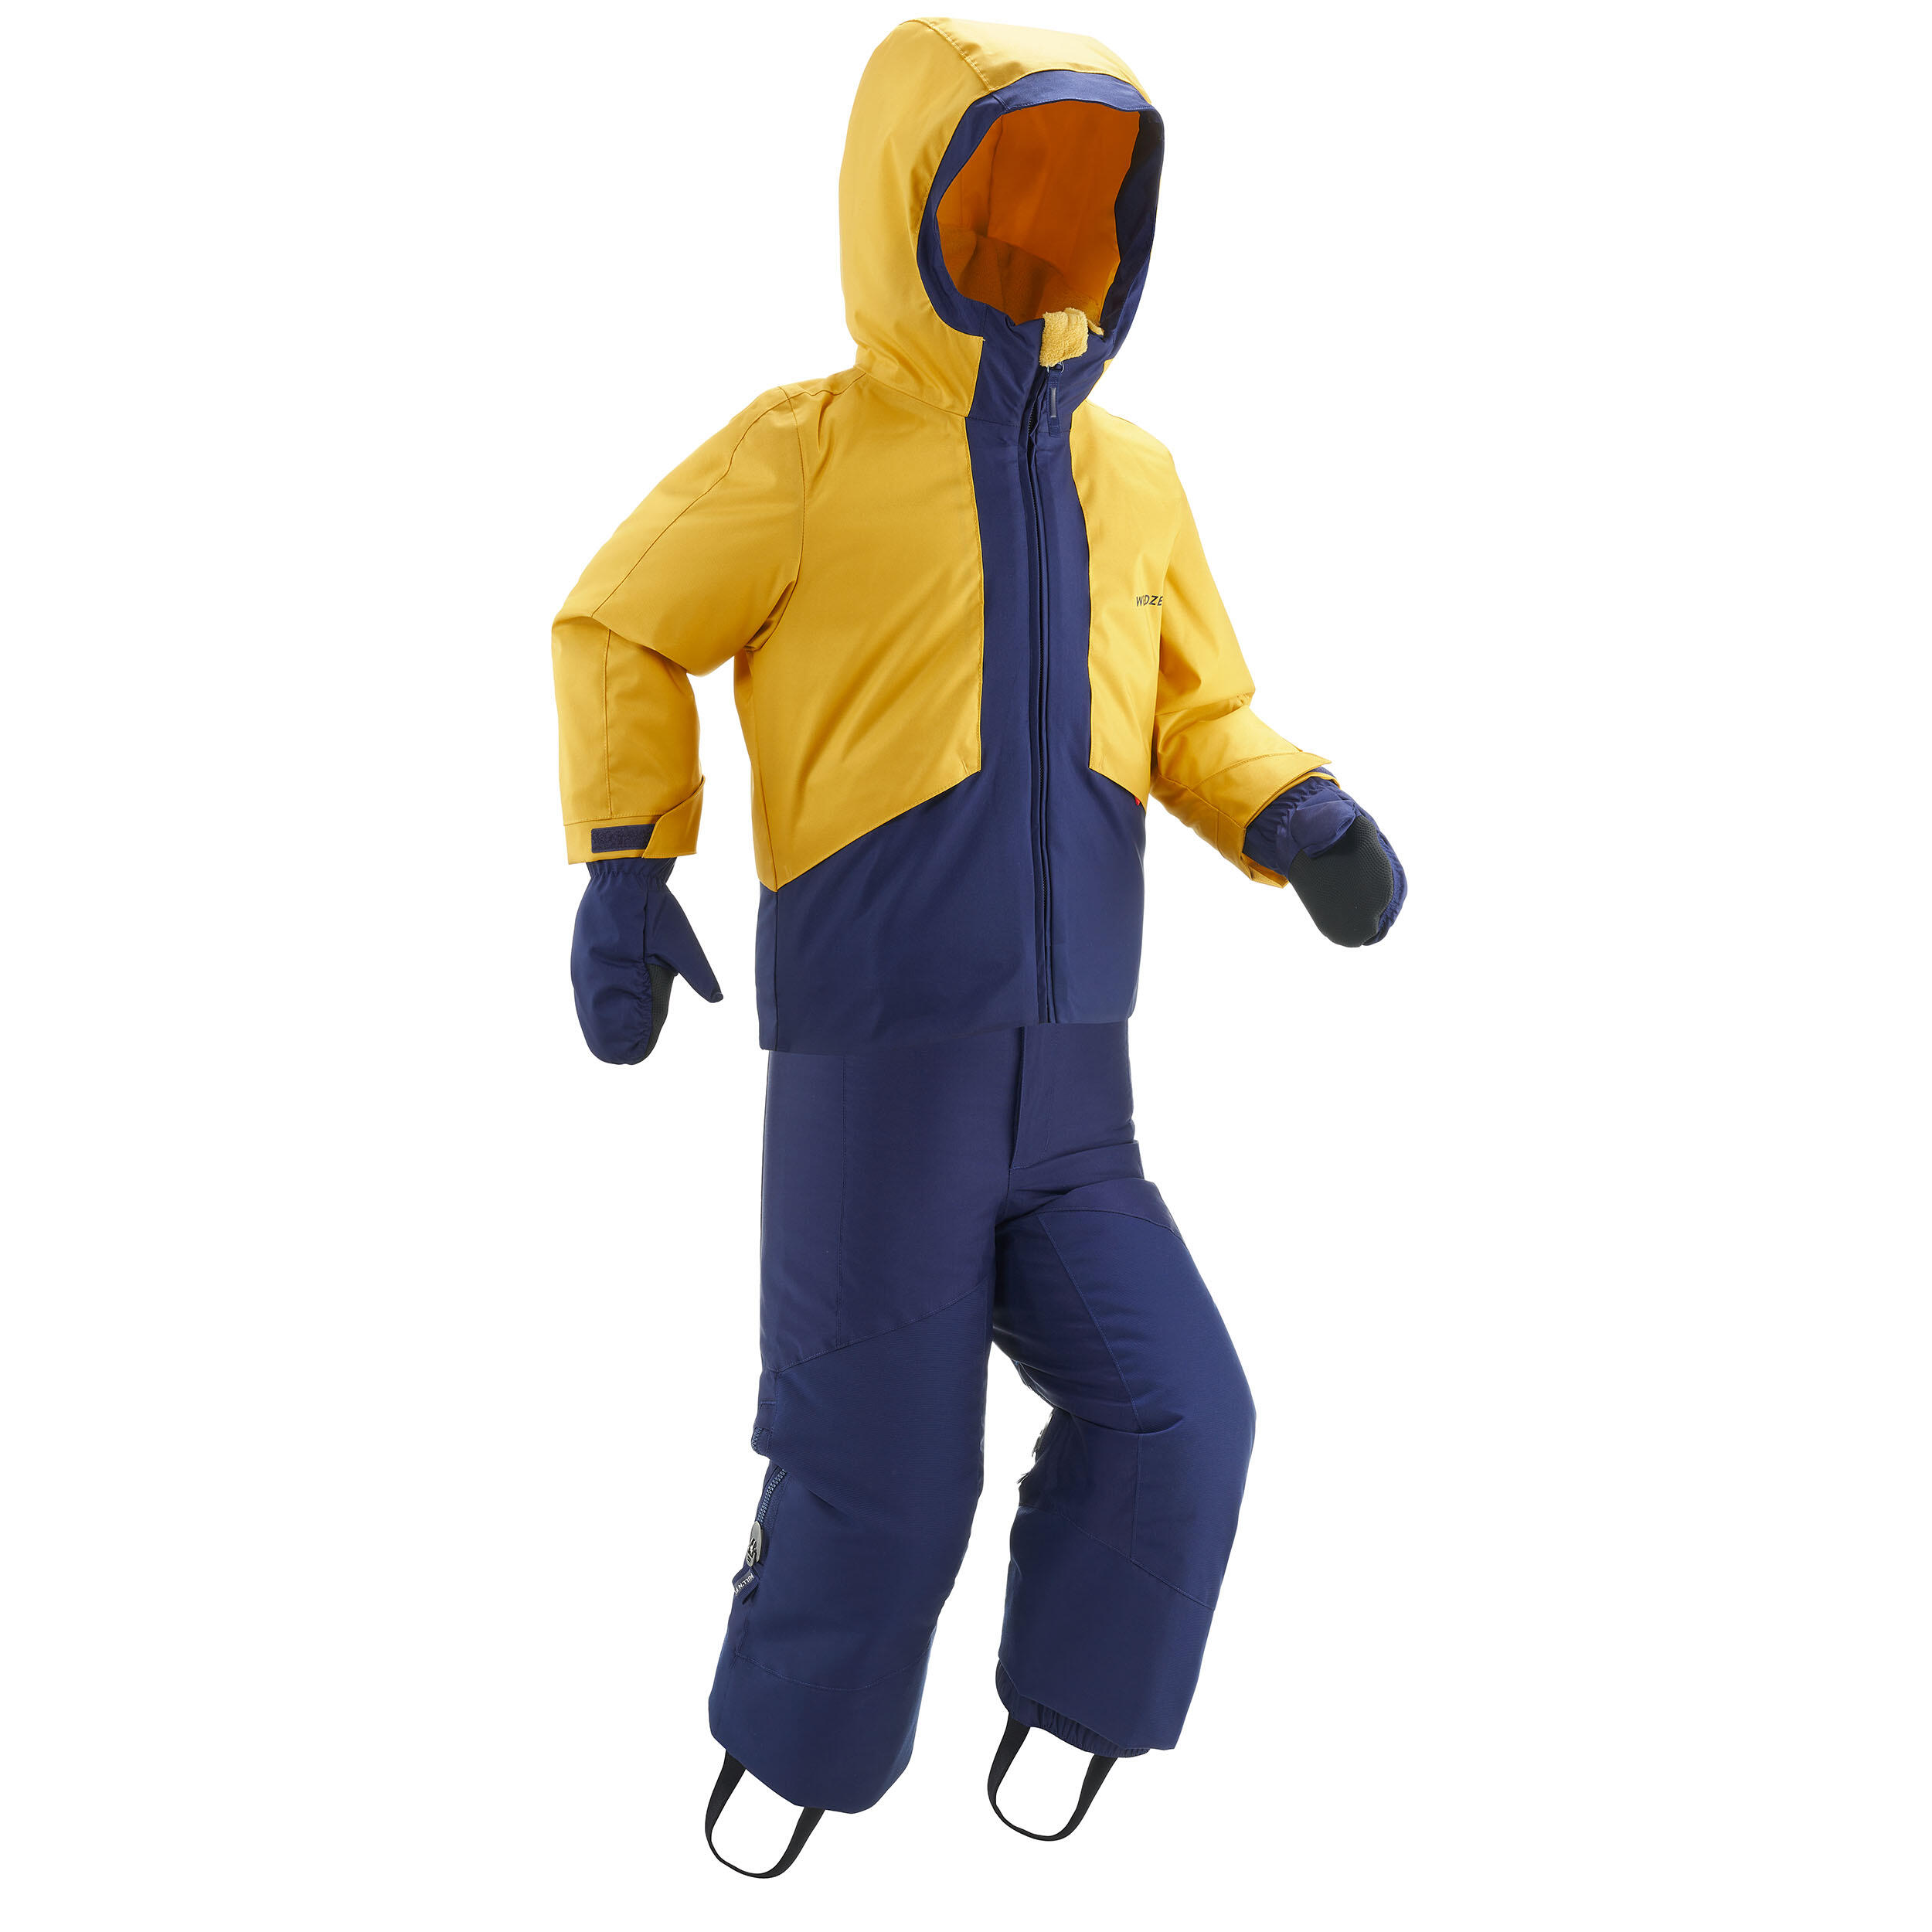  Costum schi SKI-P 580 Călduros și impermeabil Galben și Albastru Copii 